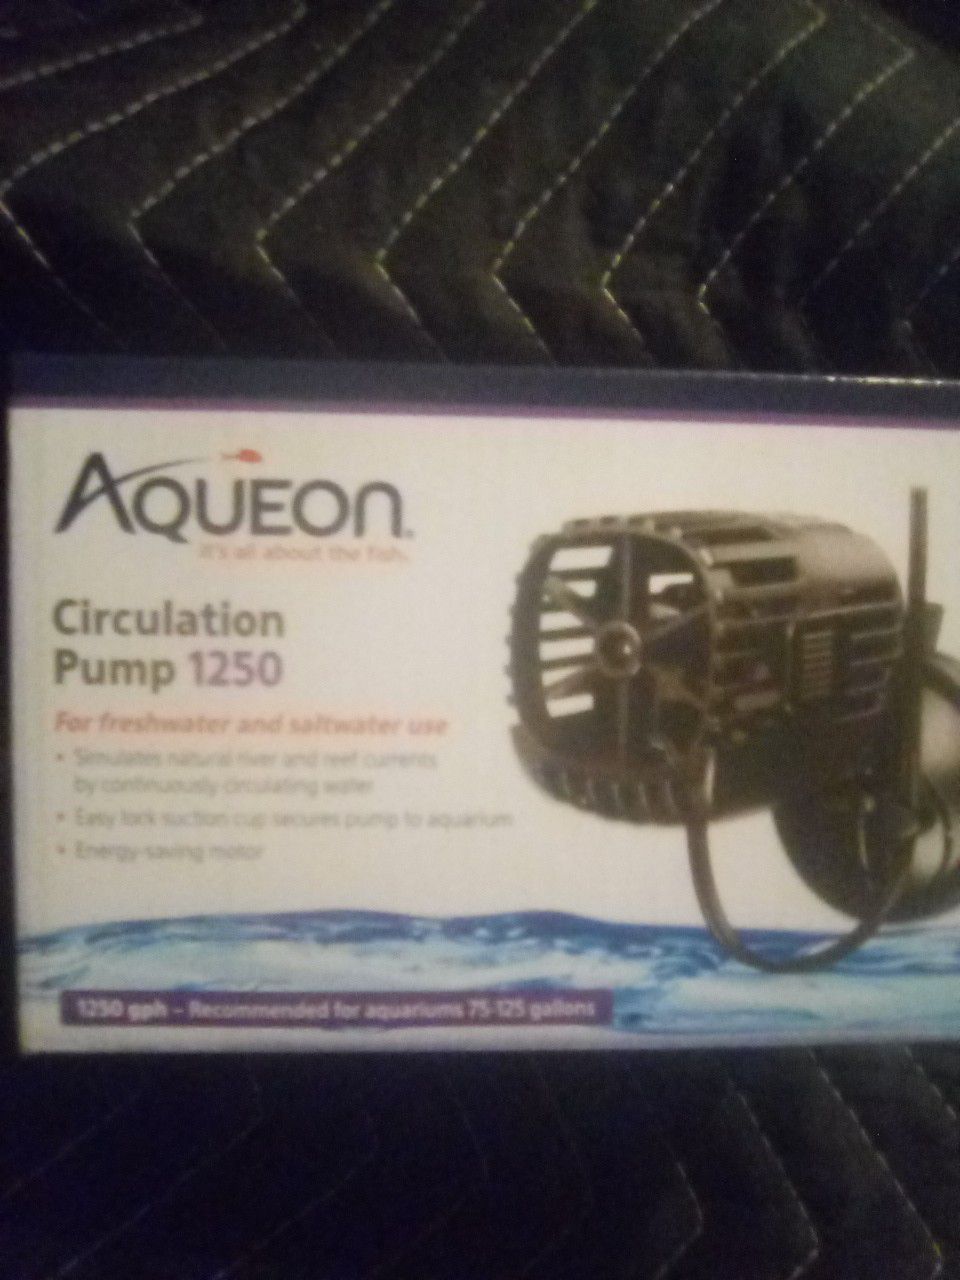 Aqueon circulation pump 1250